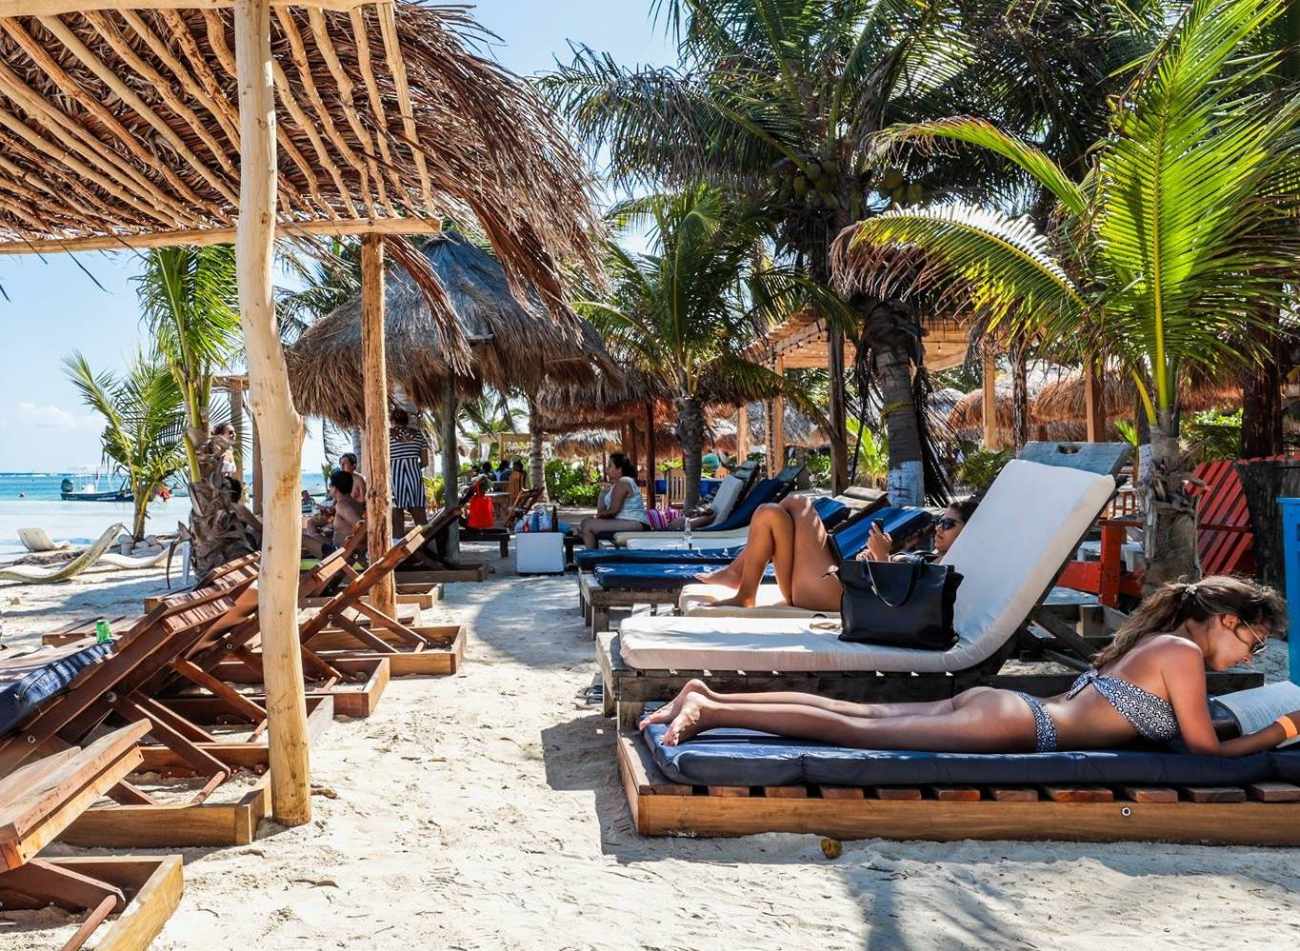 A beach club in Costa Maya